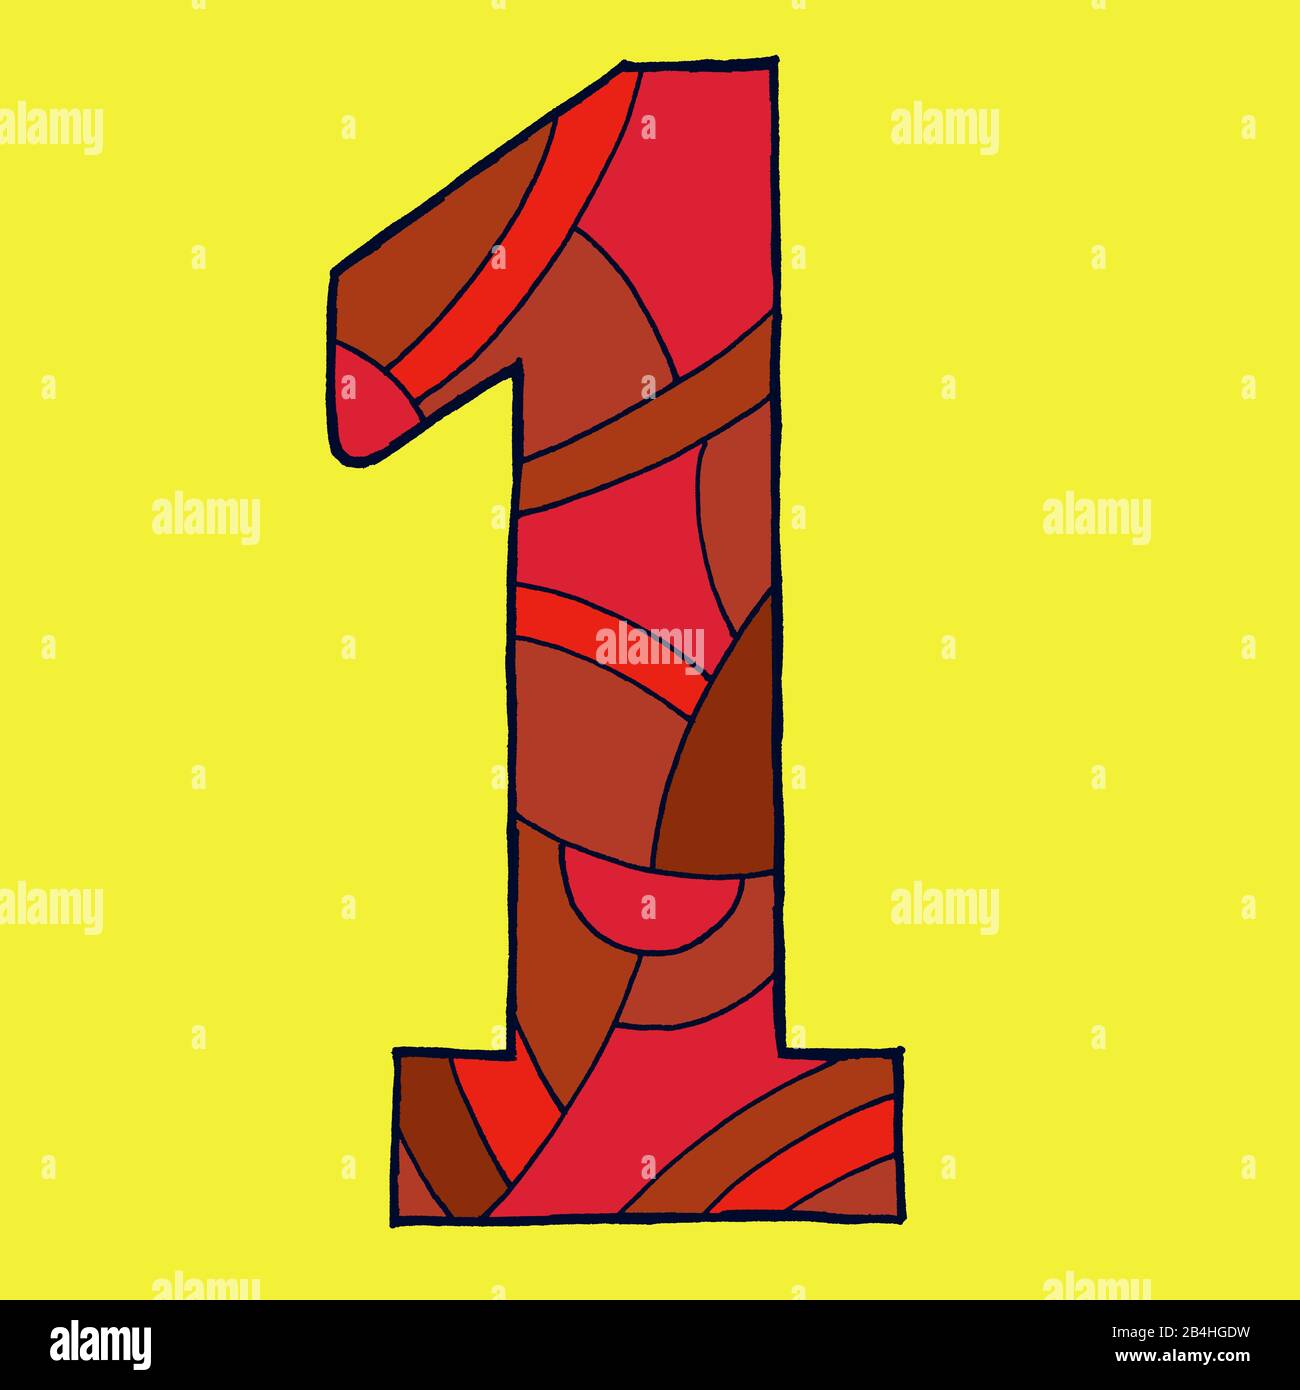 Ziffer Eins, gezeichnet als Vektorillustration, in roten Farbtönen auf gelbem Hintergrund in Pop-Art-Stilistik Stock Photo